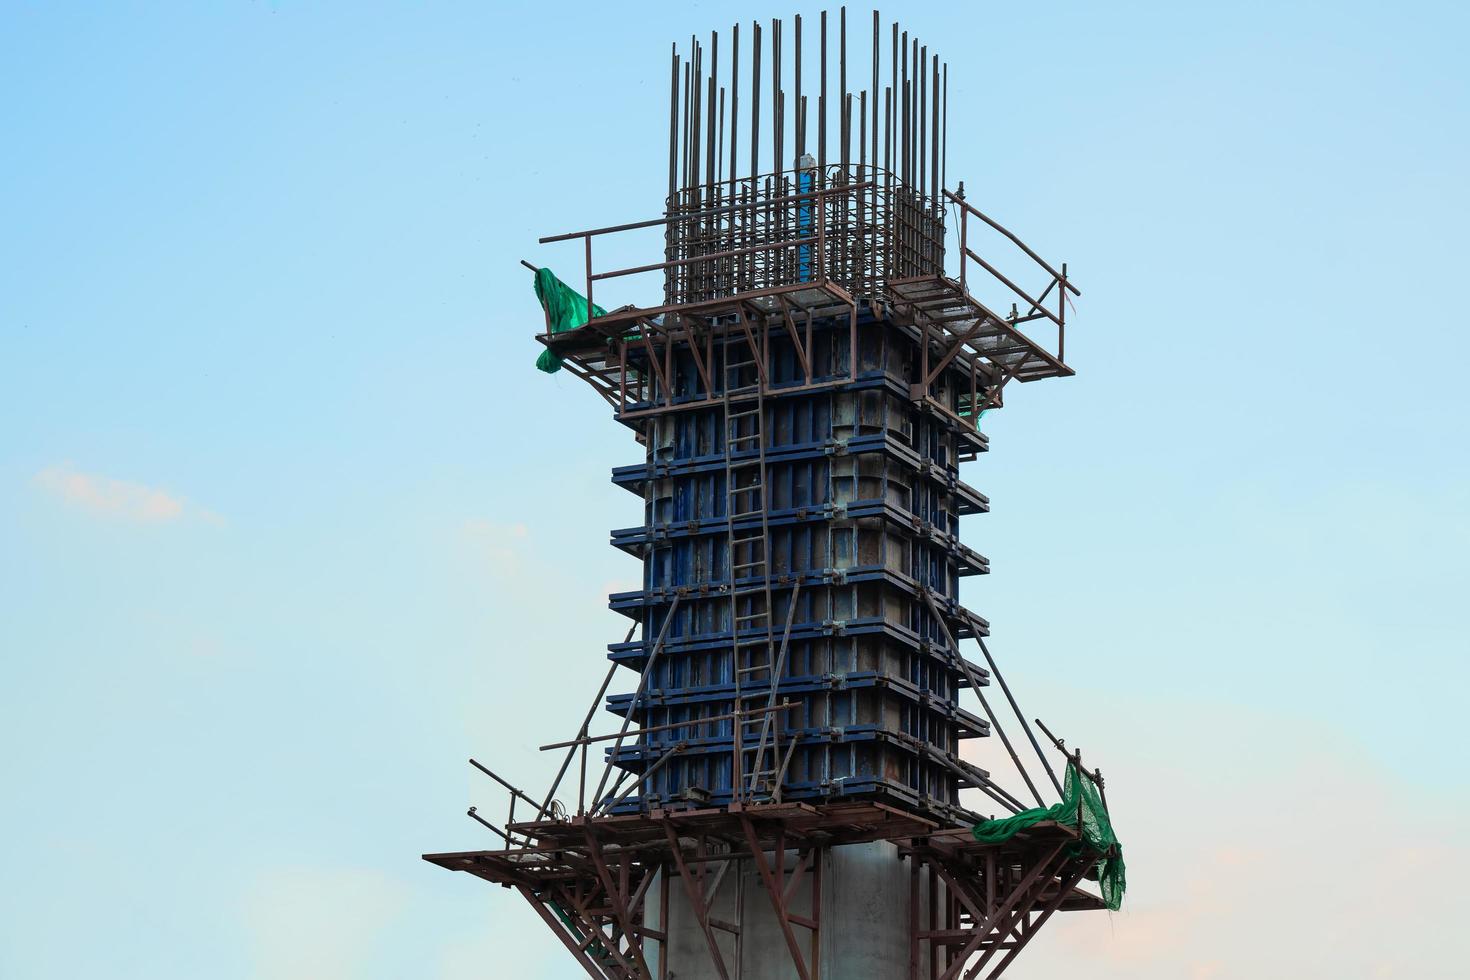 cofragem de aço ou cofragem para postes de betão ou pilares de pontes .construção do edifício estruturas mais altas cofragem modular em aço. foto